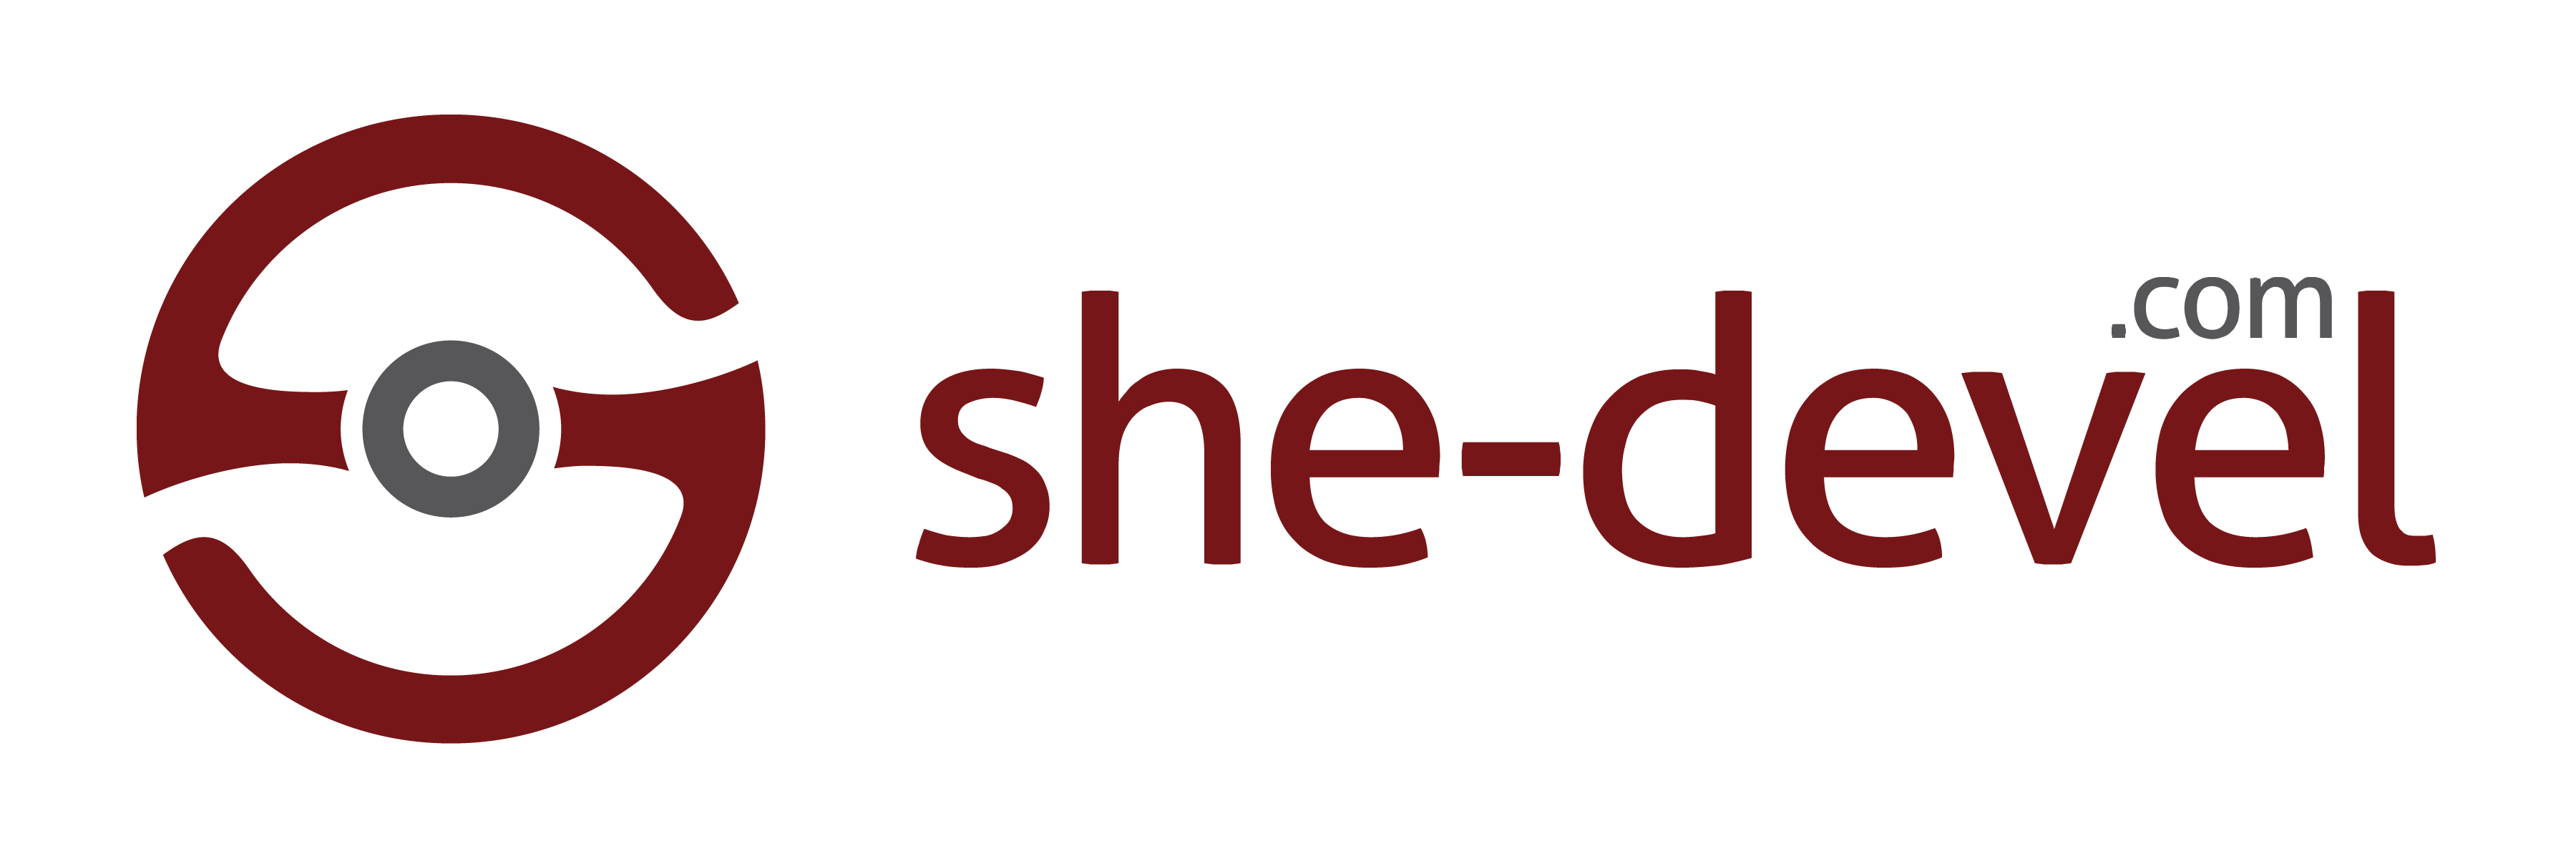 she-devel.com logo